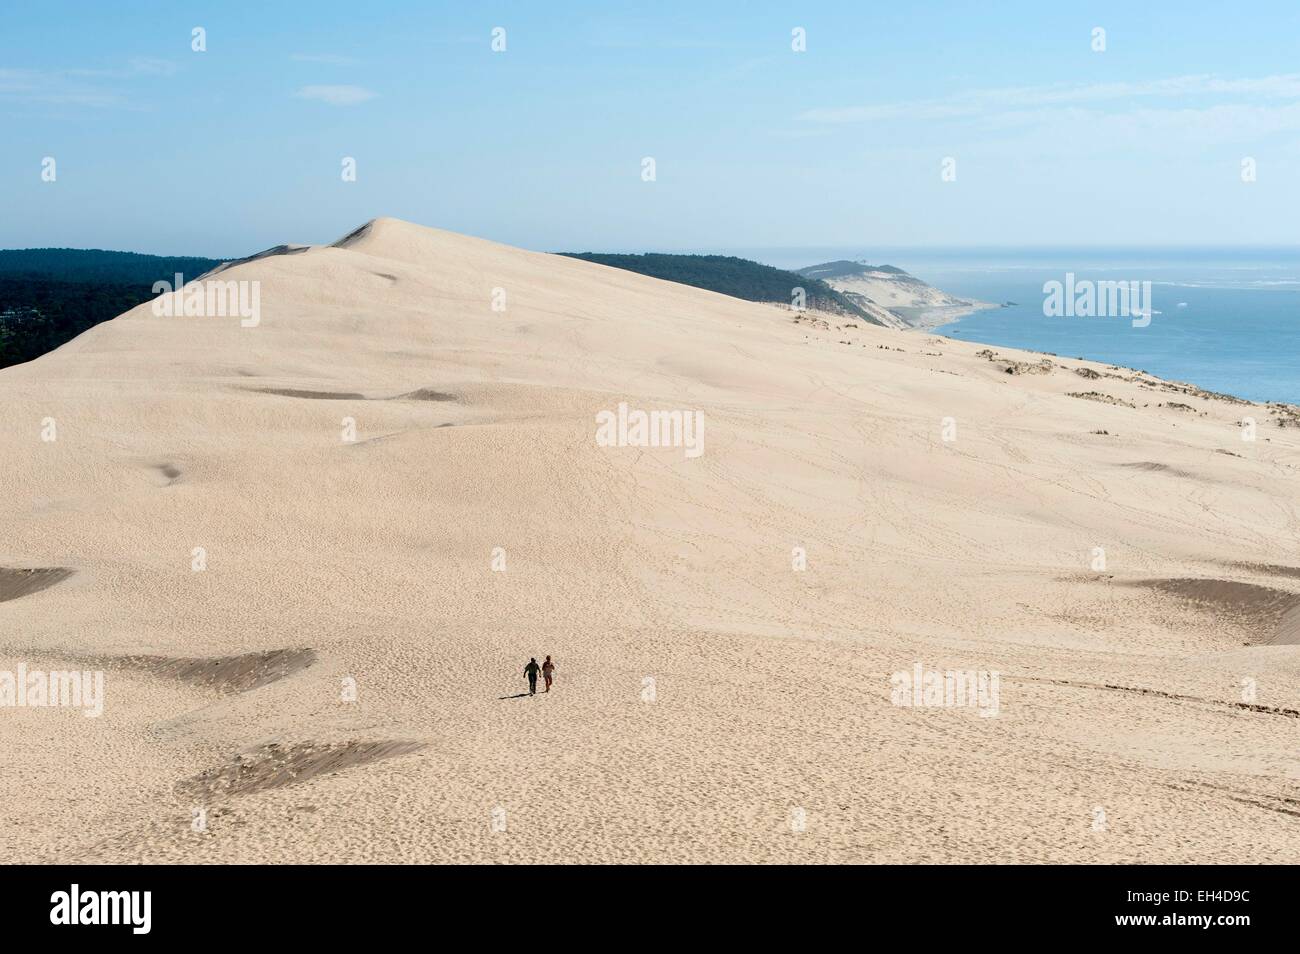 France, Gironde, La Teste de Buch, Dune du Pilat est la plus haute dune d'Europe (110m), en train de marcher sur la dune Banque D'Images